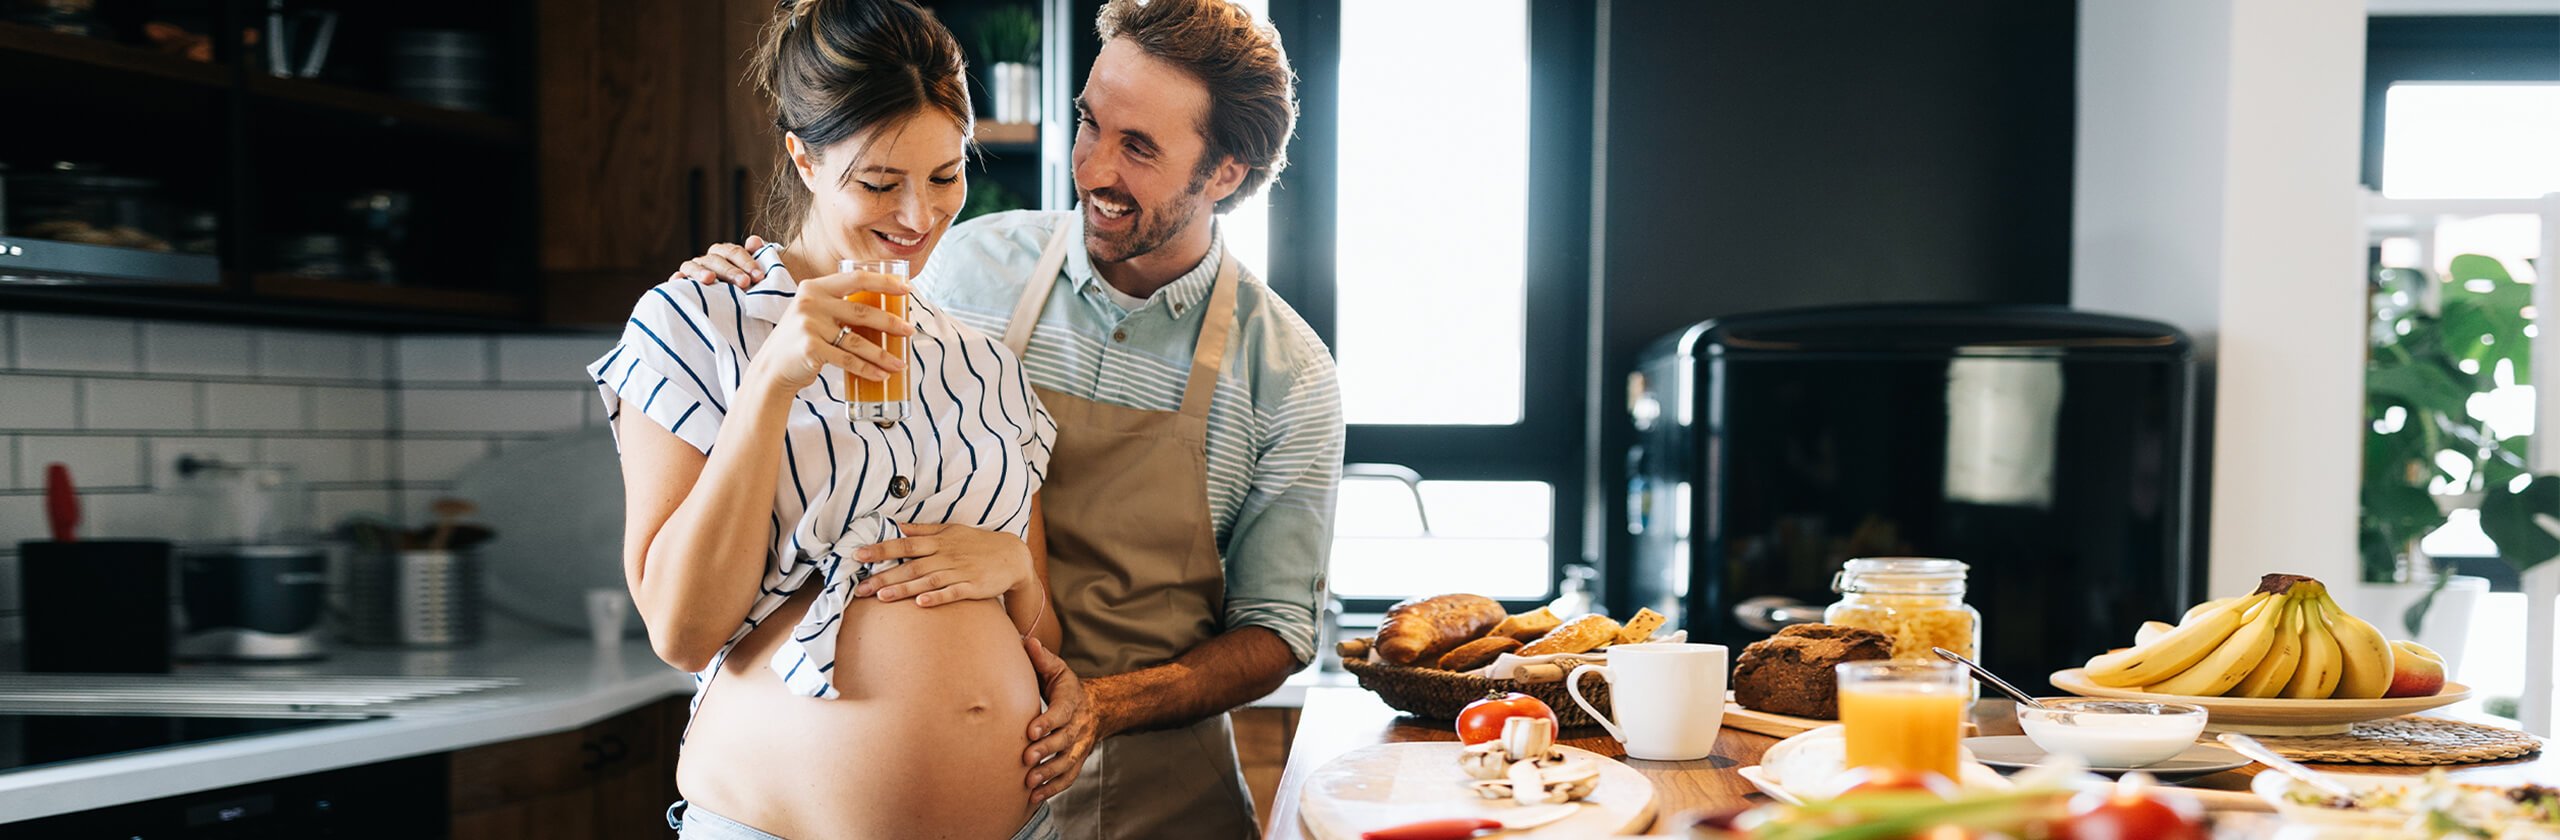 Junge Schwangere und ihr Partner sind voller Vorfreude auf das Baby